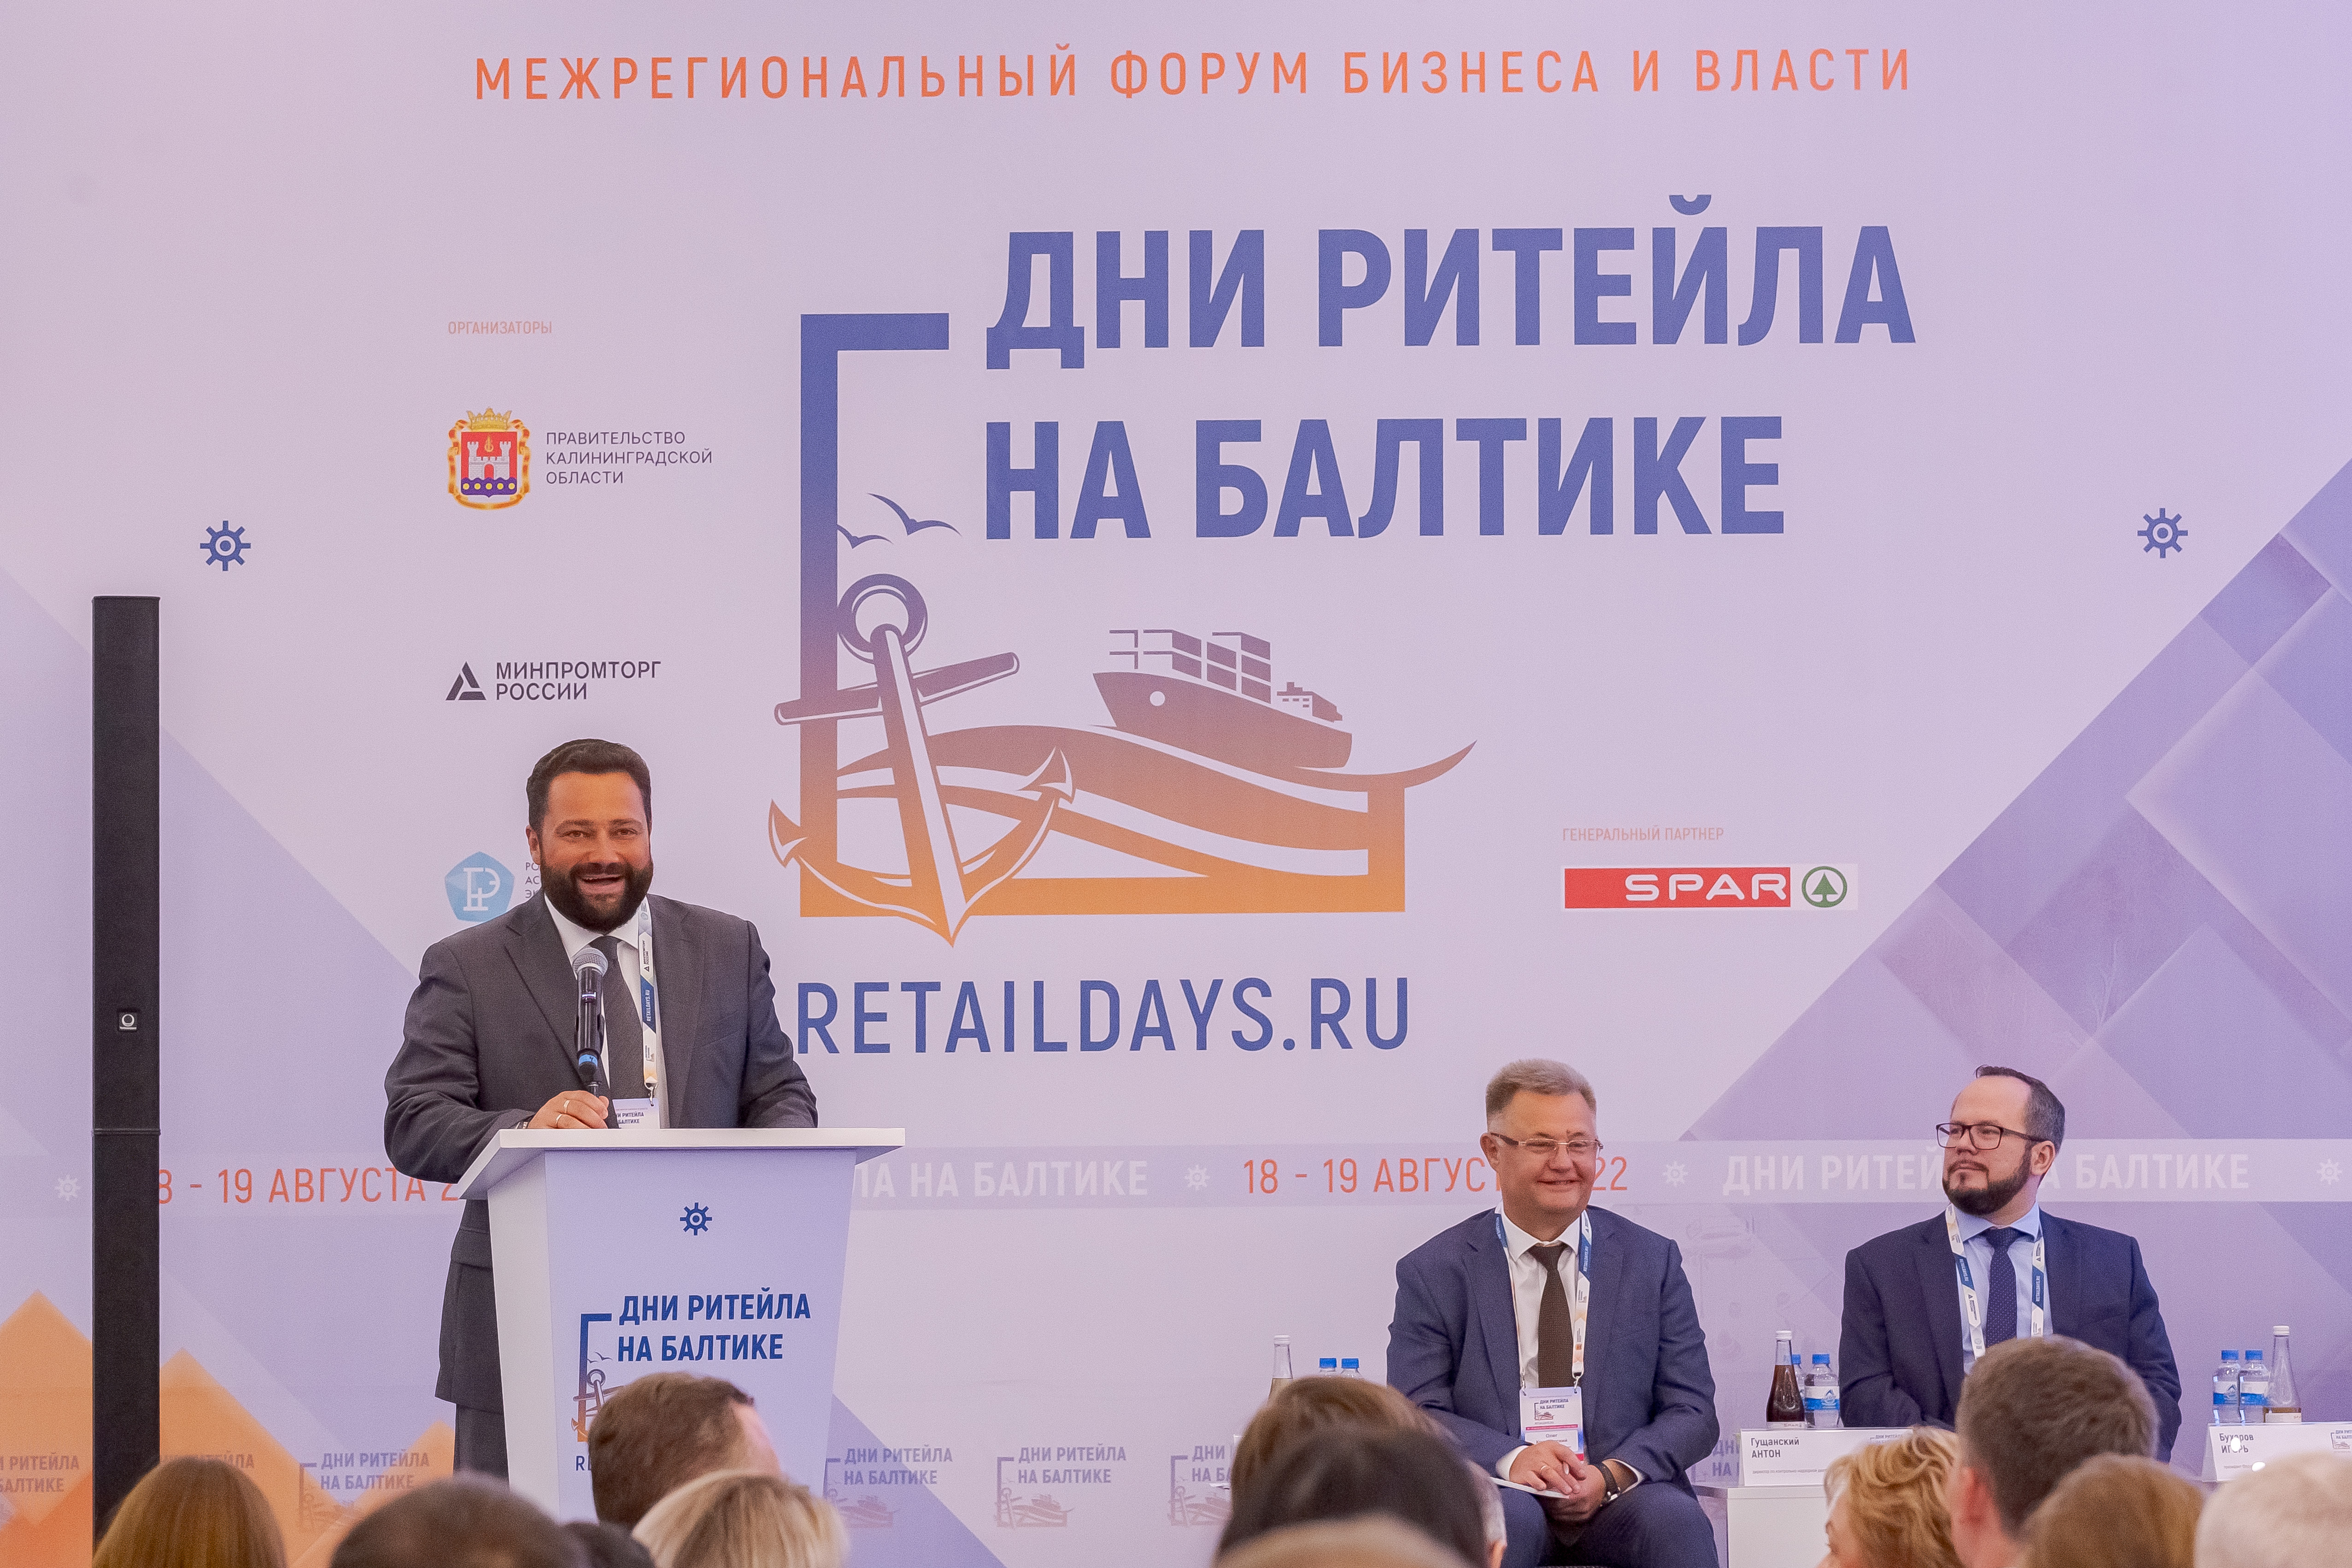 IX Международный форум бизнеса и власти «Неделя Российского Ритейла»